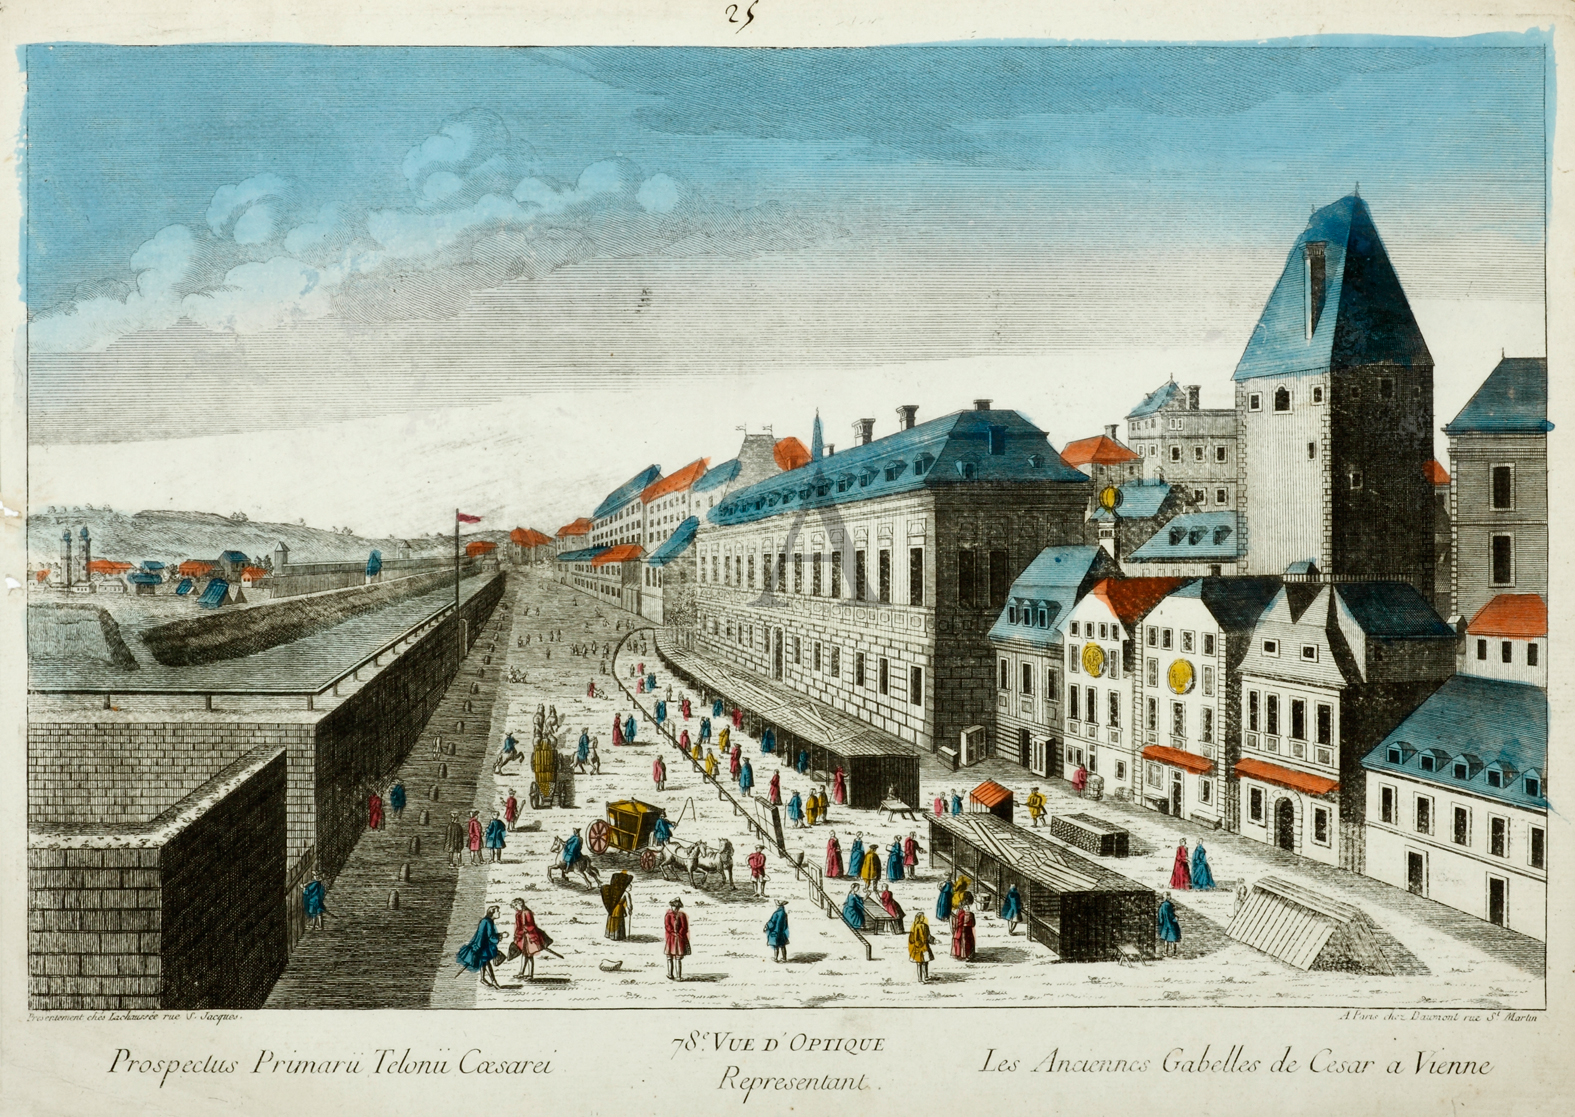 Prospectus Primarii Telonii Caesarei. Les Anciennes Gabelles de Cesar a Vienne. - Antique View from 1760